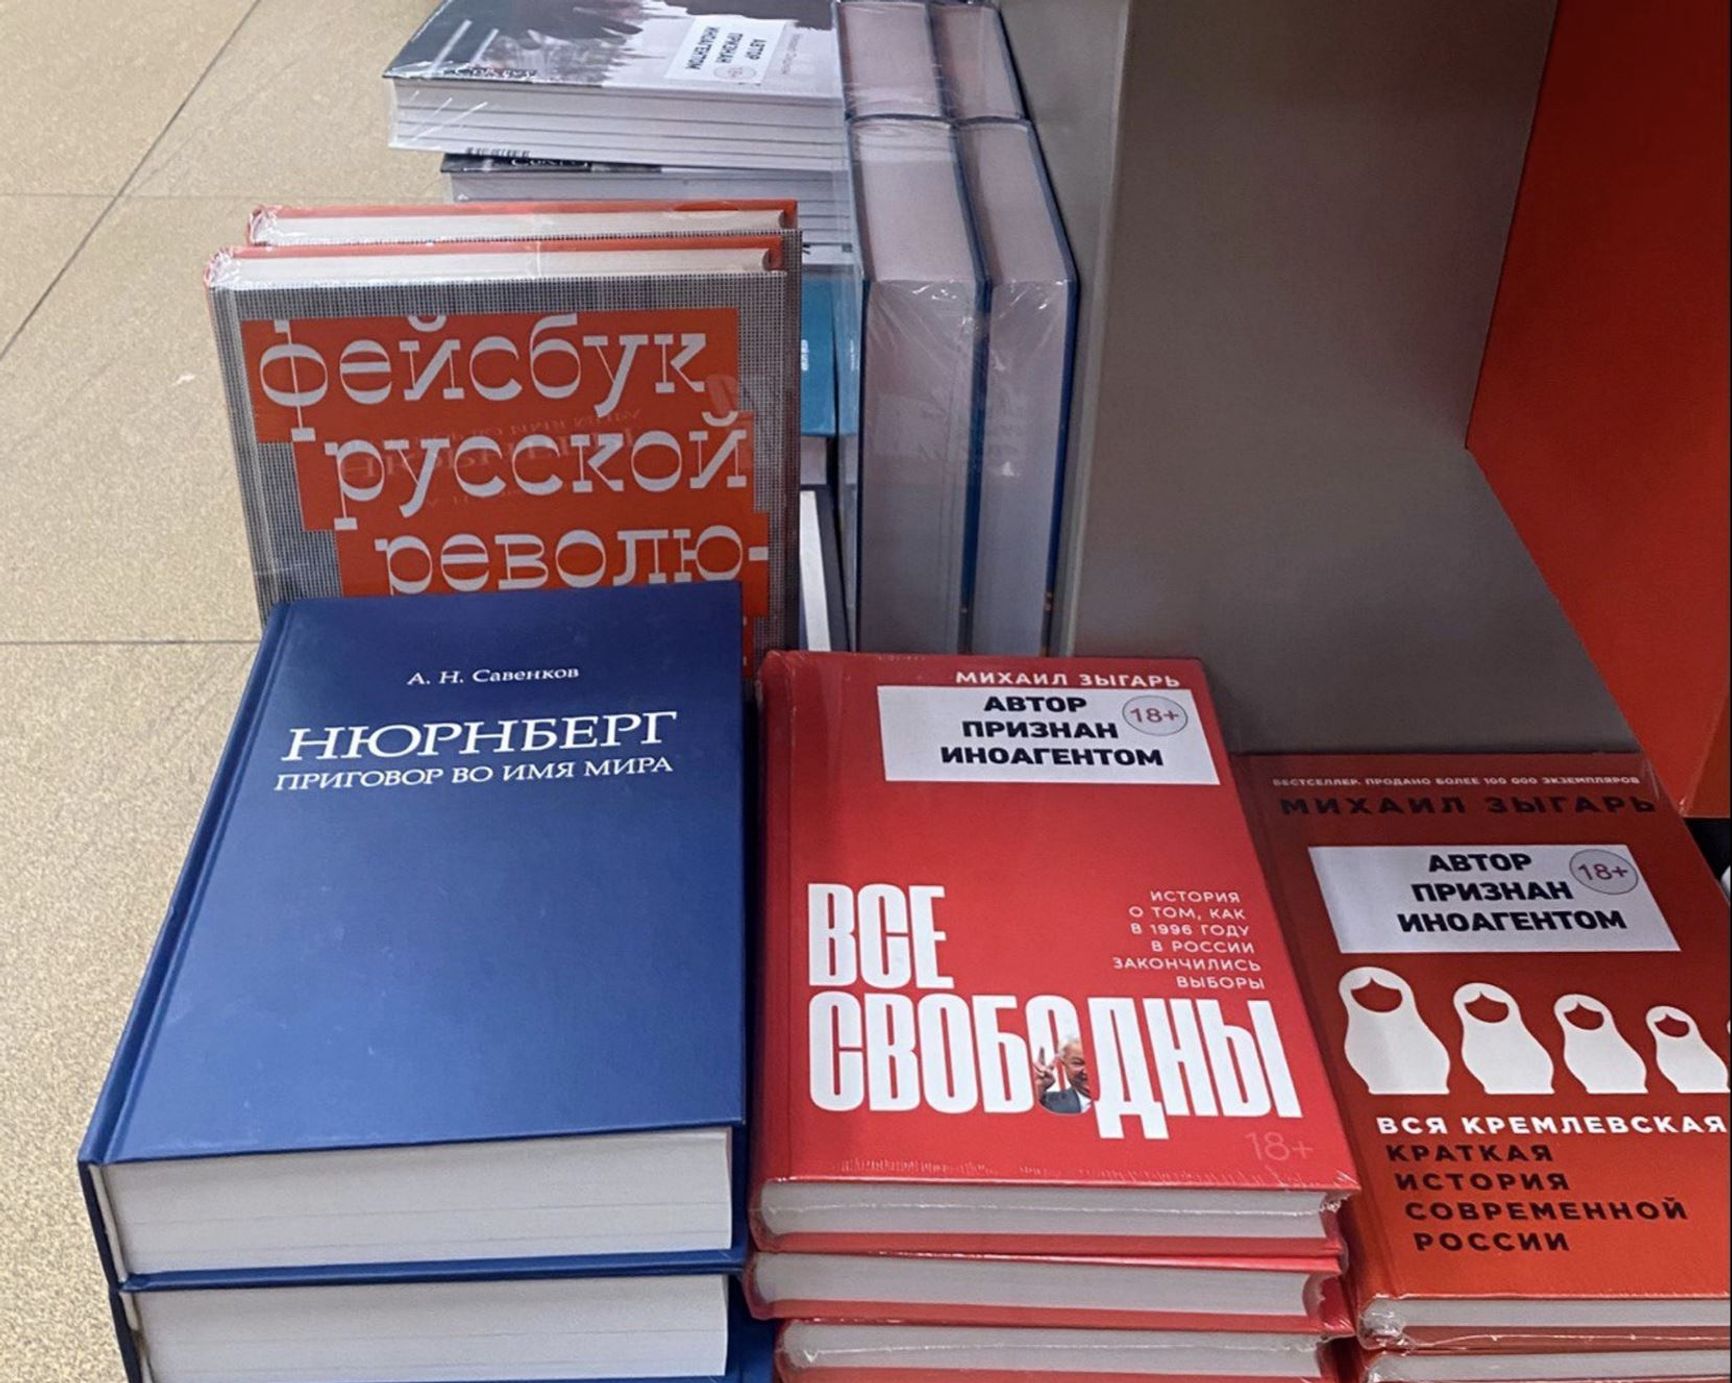 Moskva Bookstore on Tverskaya Street 